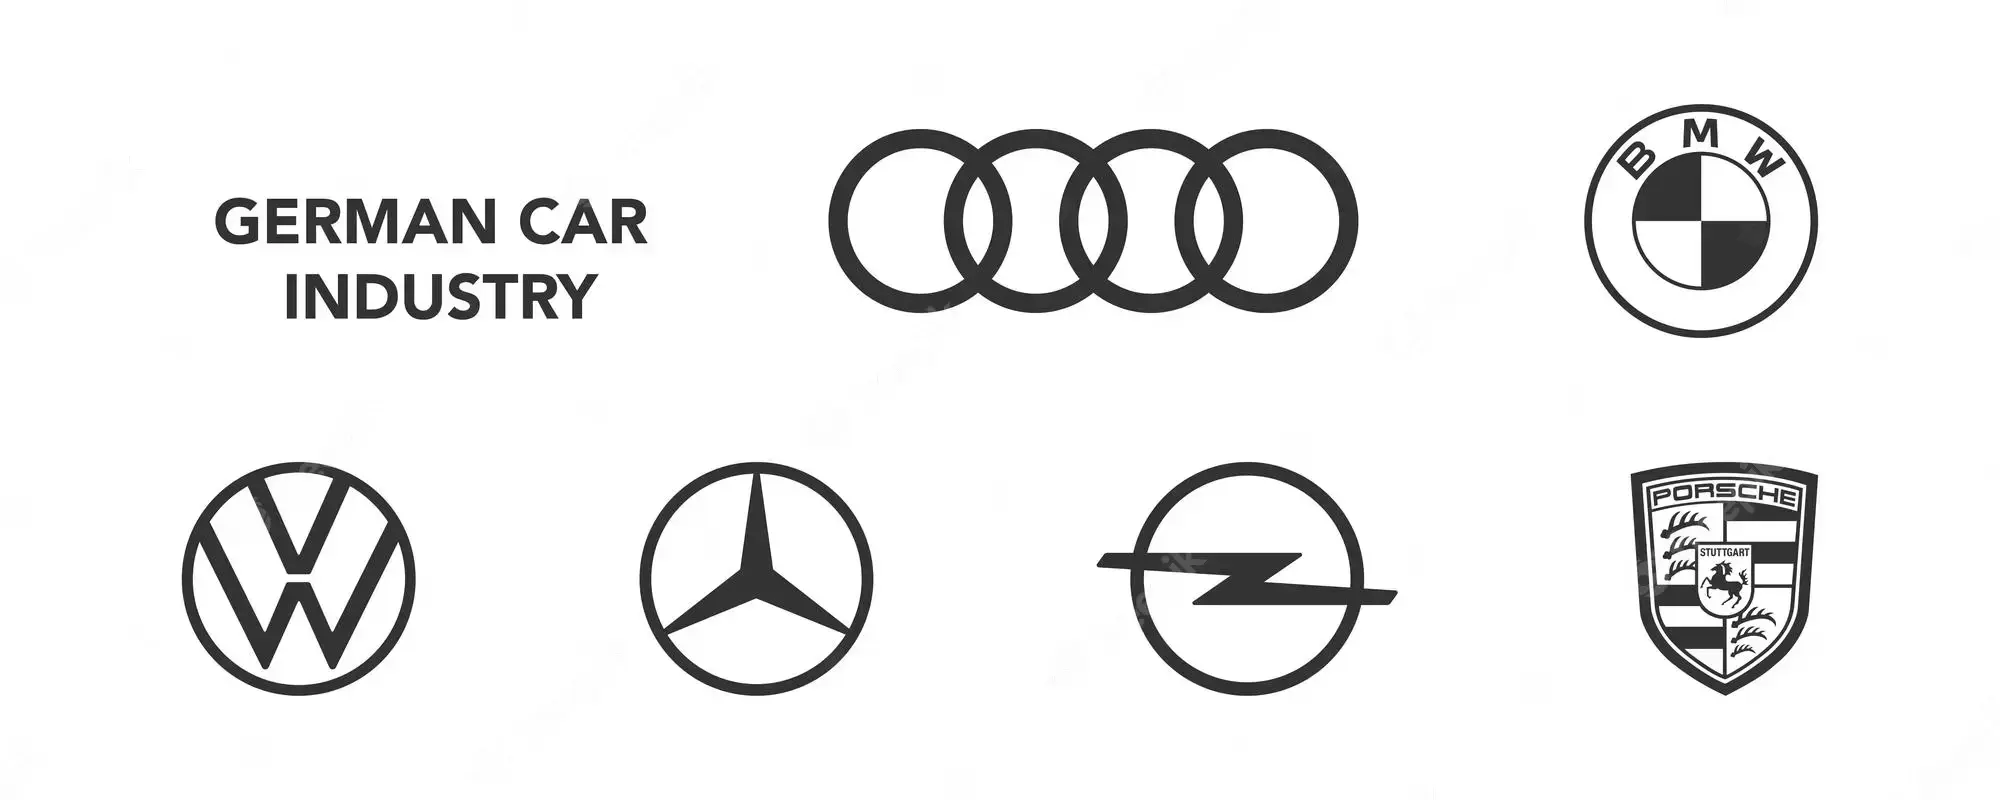 Классические марки автомобилей и история их успеха — всё о легендарных брендах!